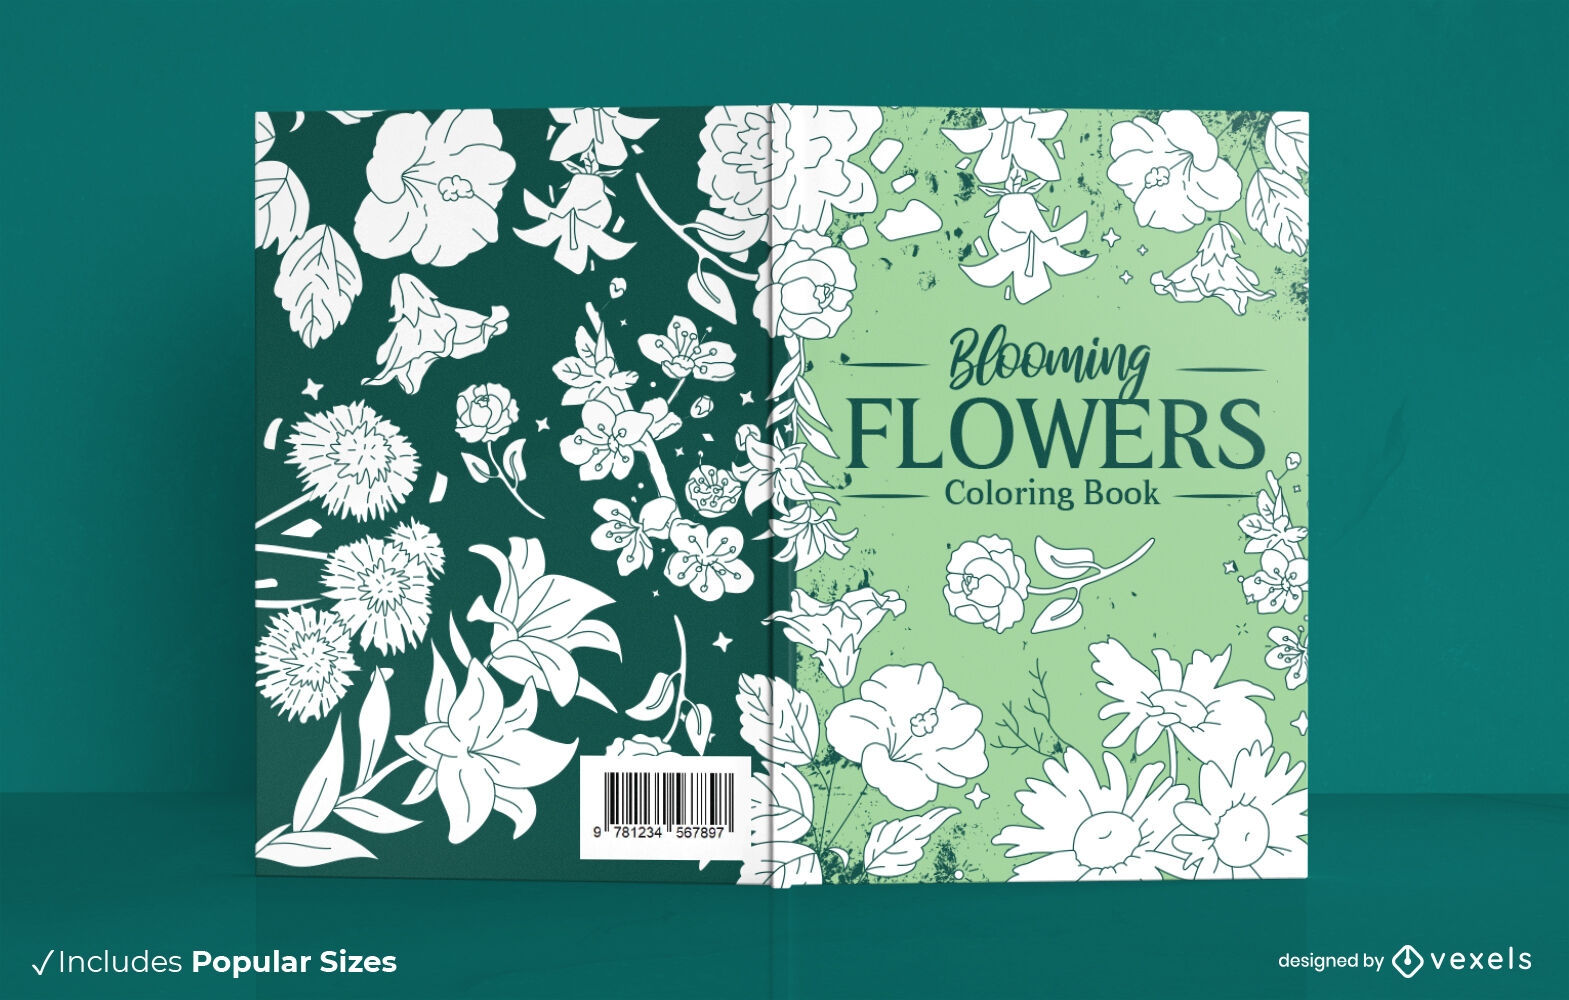 Descarga Vector De Flores Para Colorear Diseño De Portada De Libro